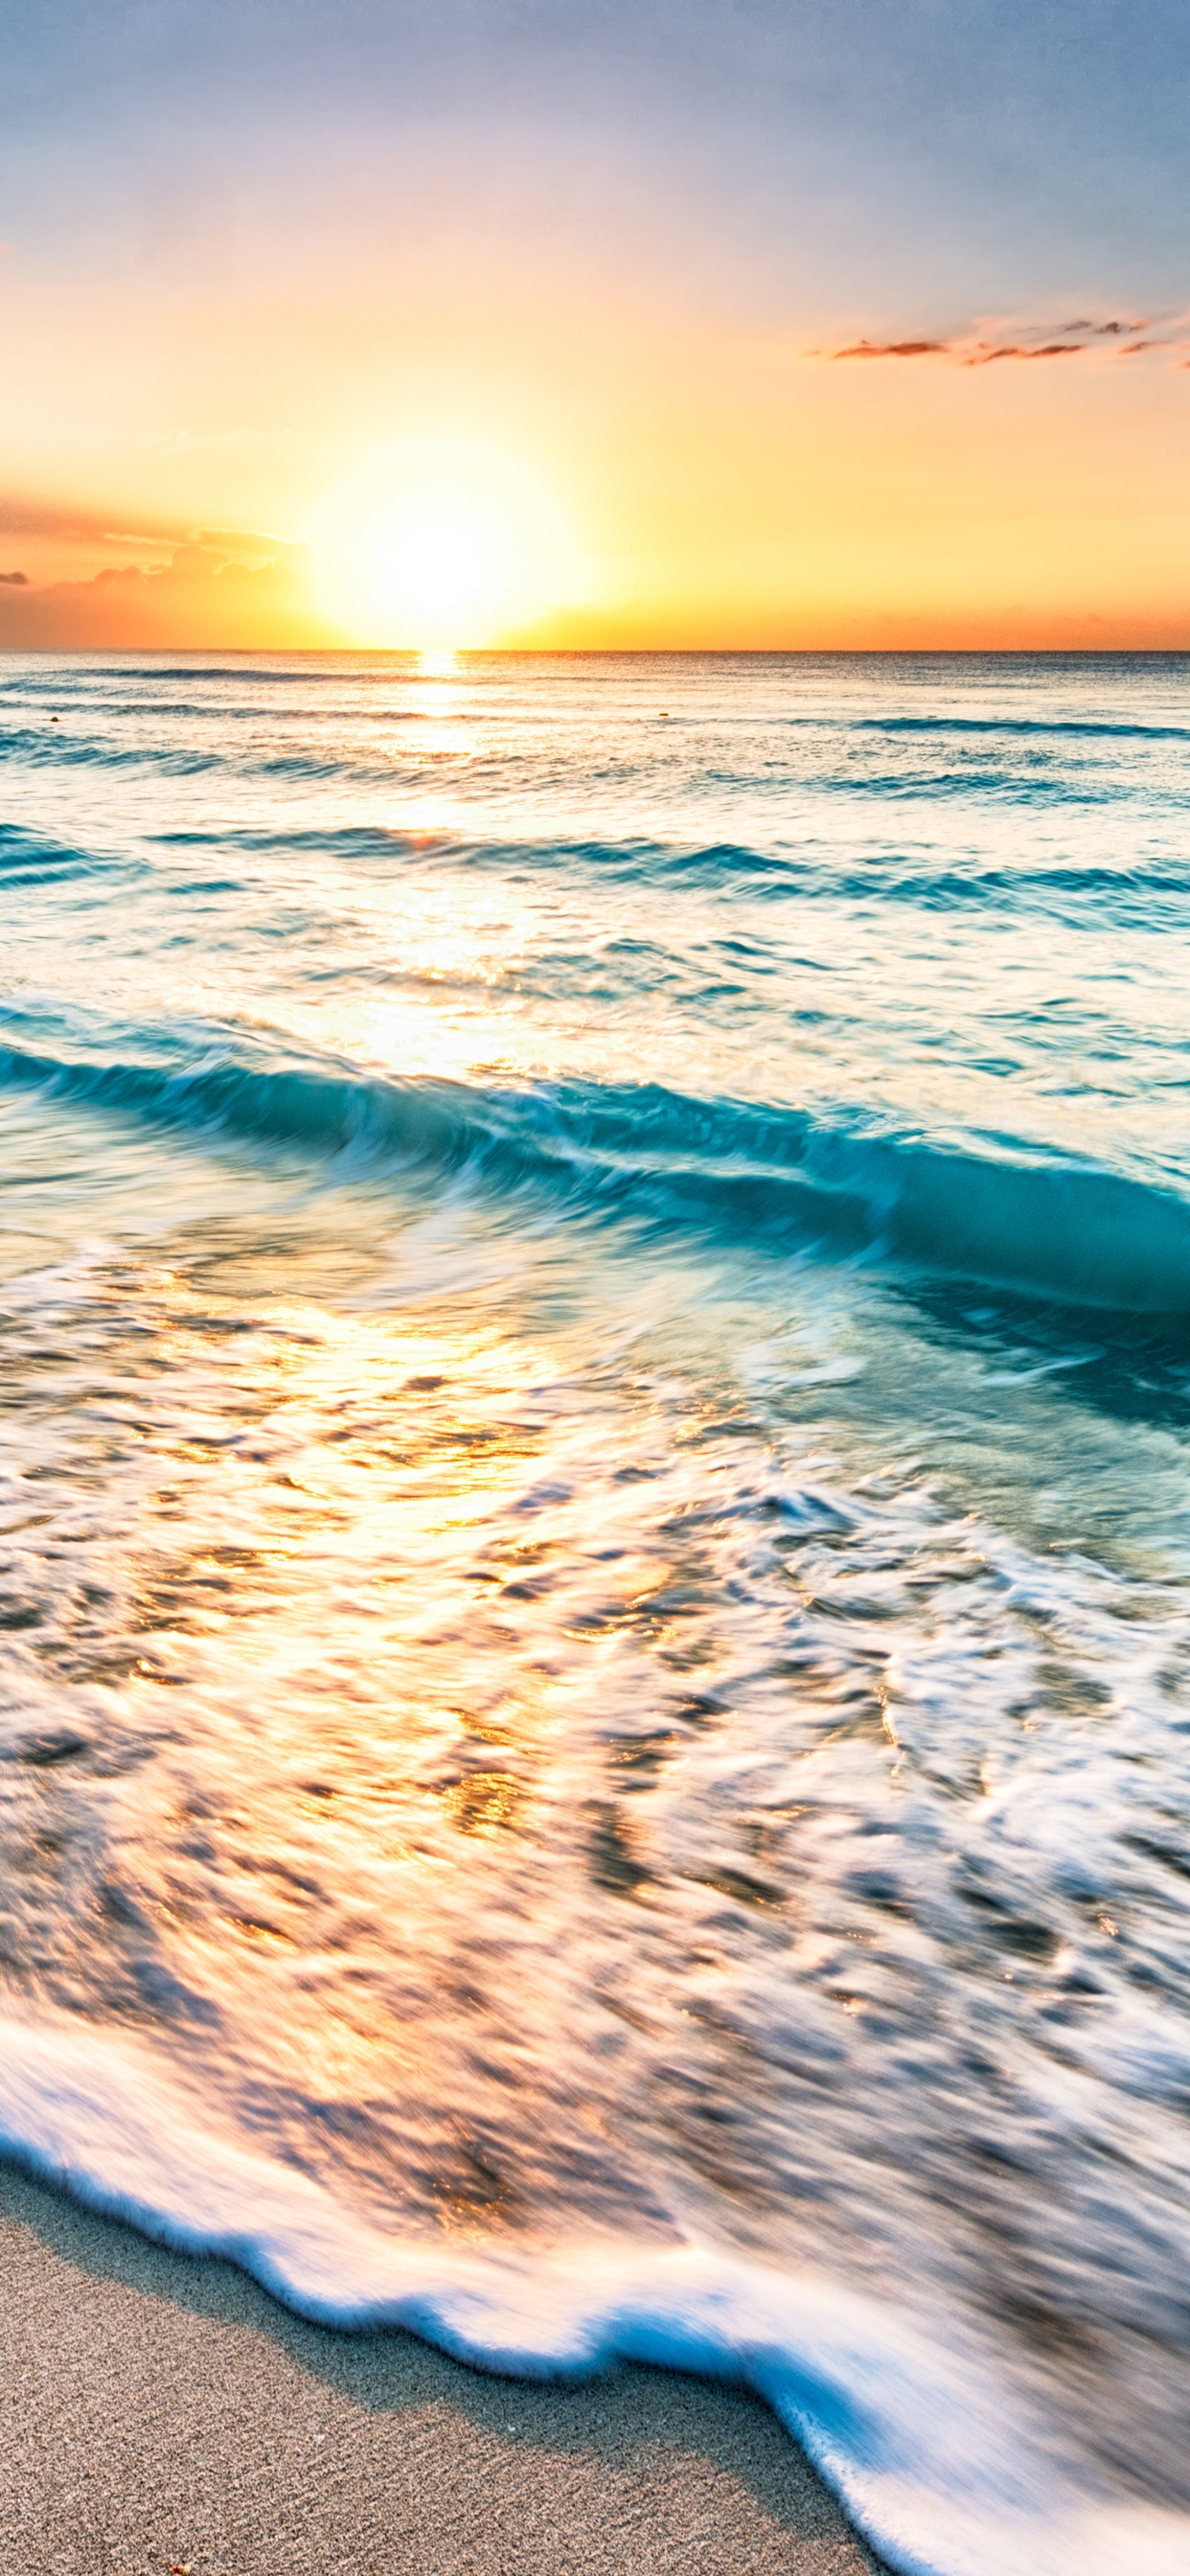 Картинка: Вода, море, океан, волны, пена, суша, песок, небо, закат, горизонт, пейзаж